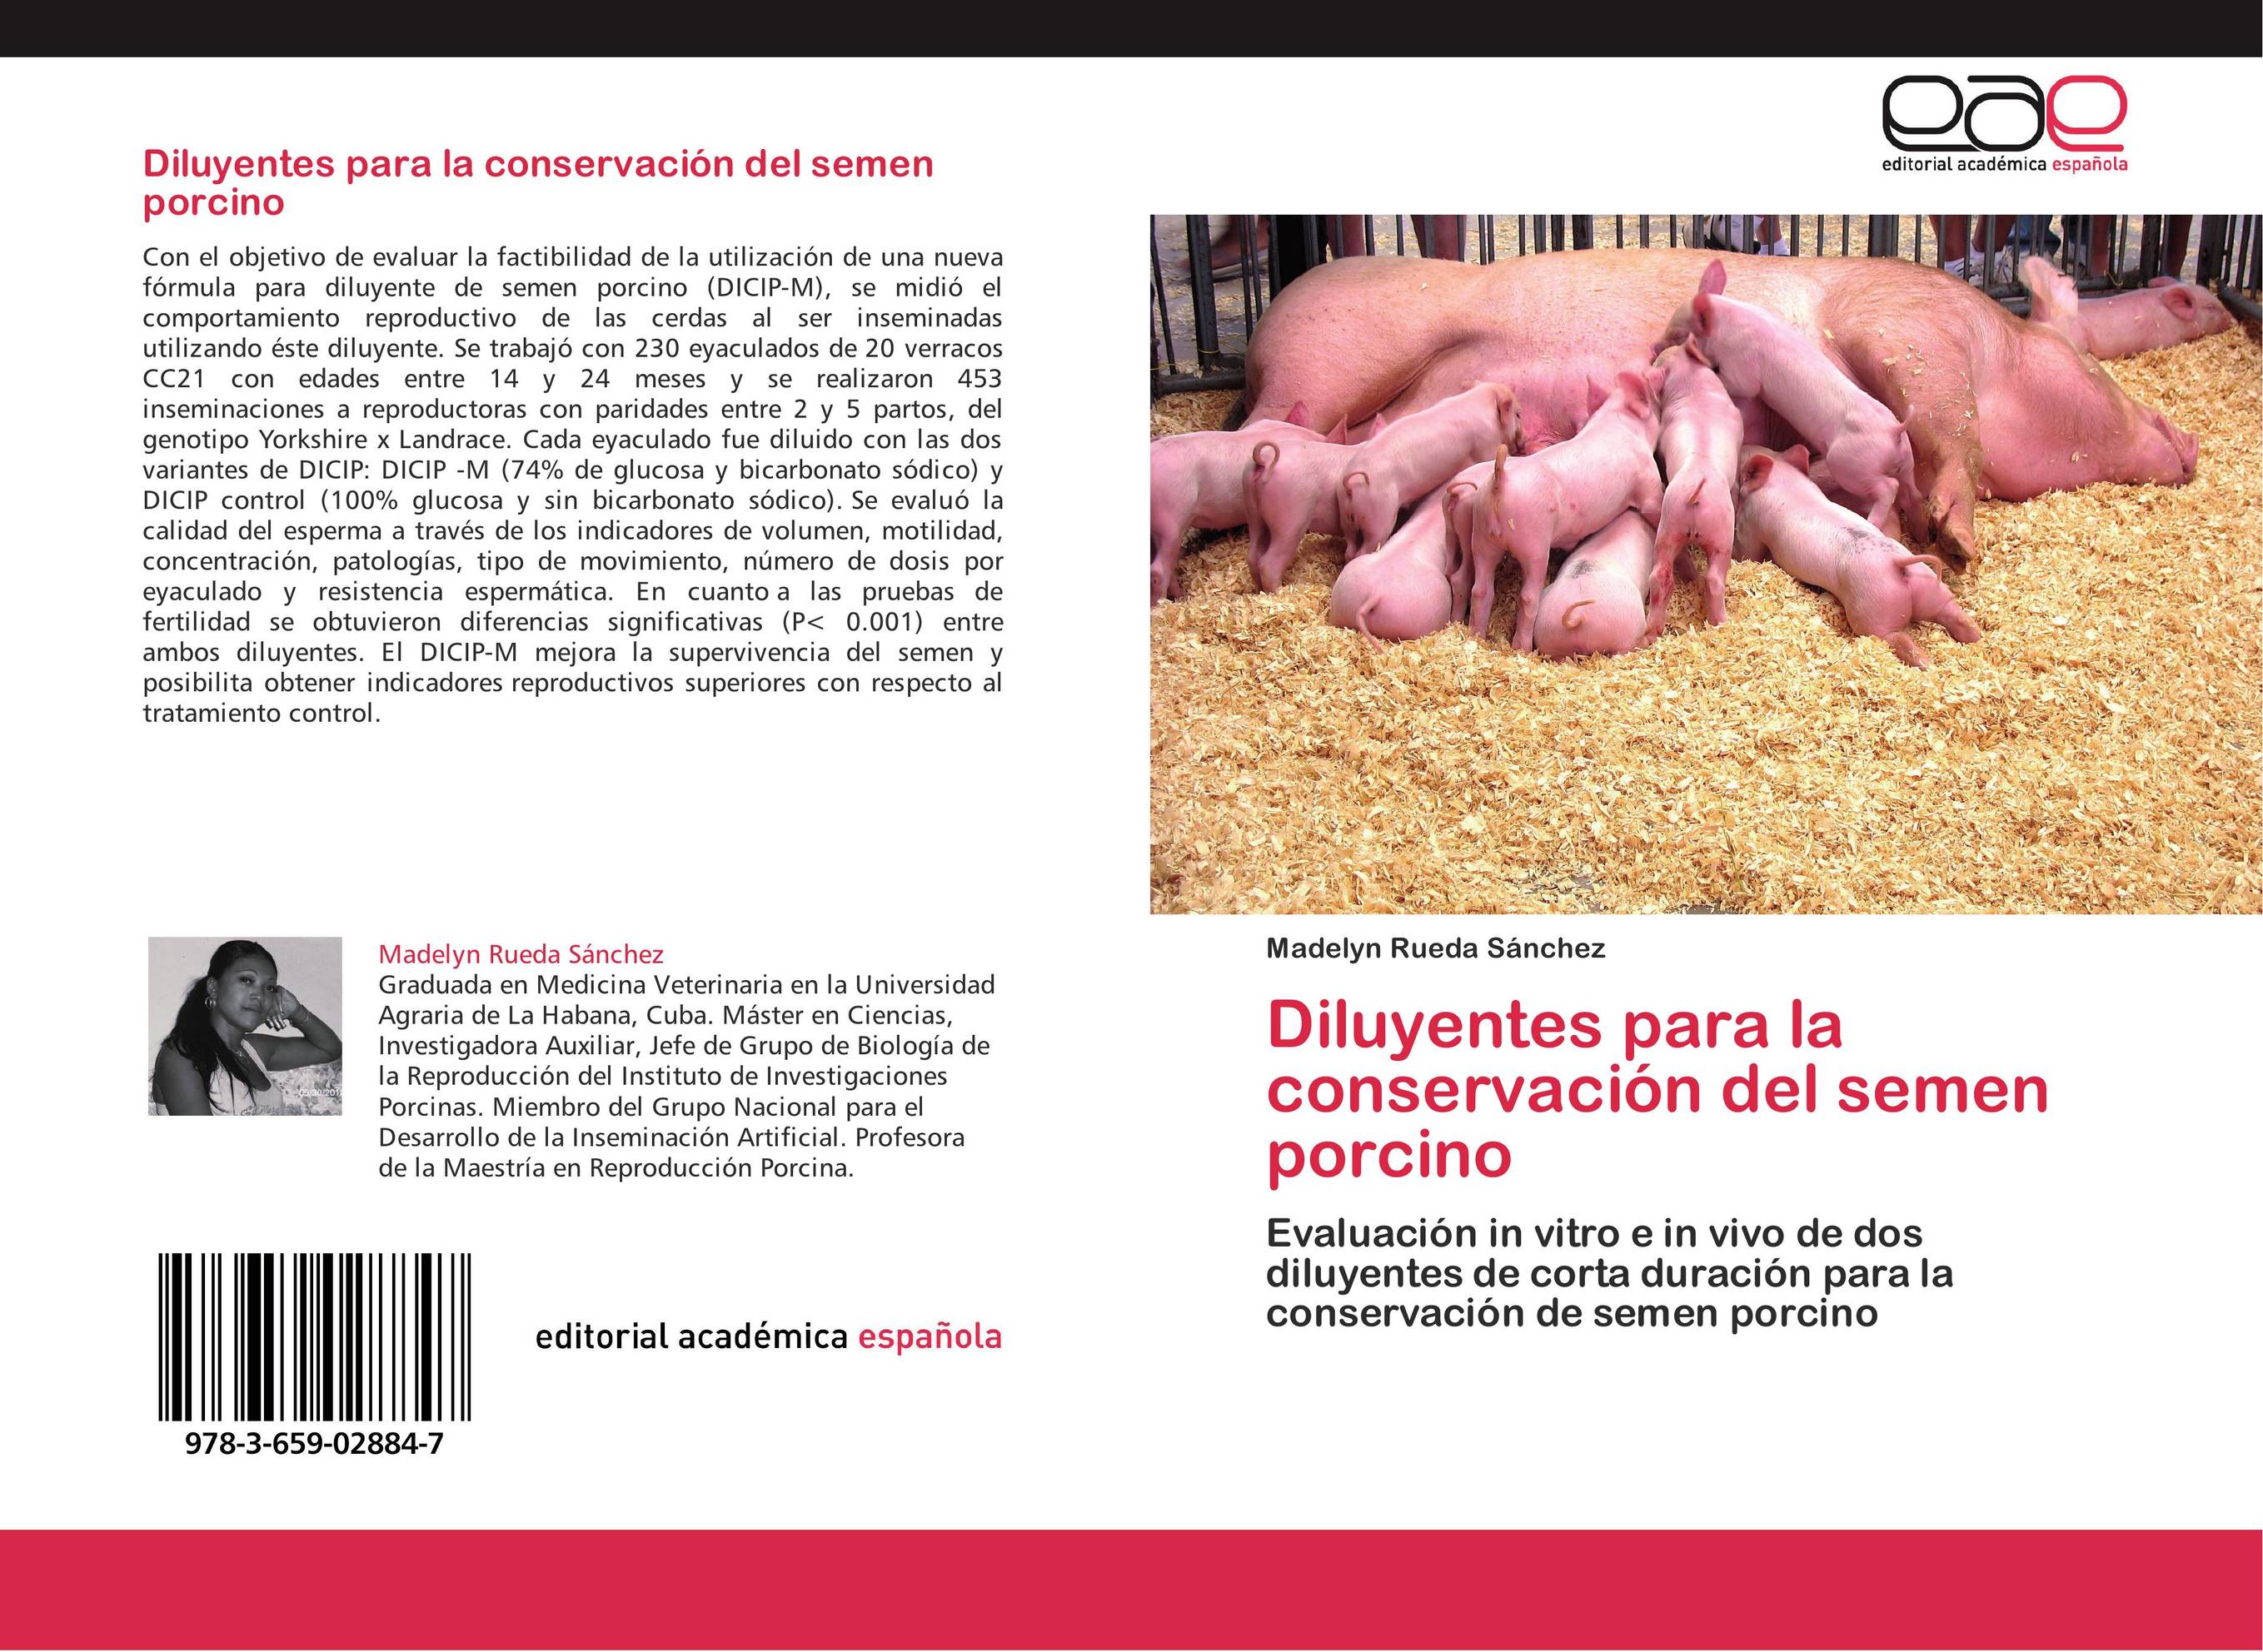 Diluyentes para la conservación del semen porcino